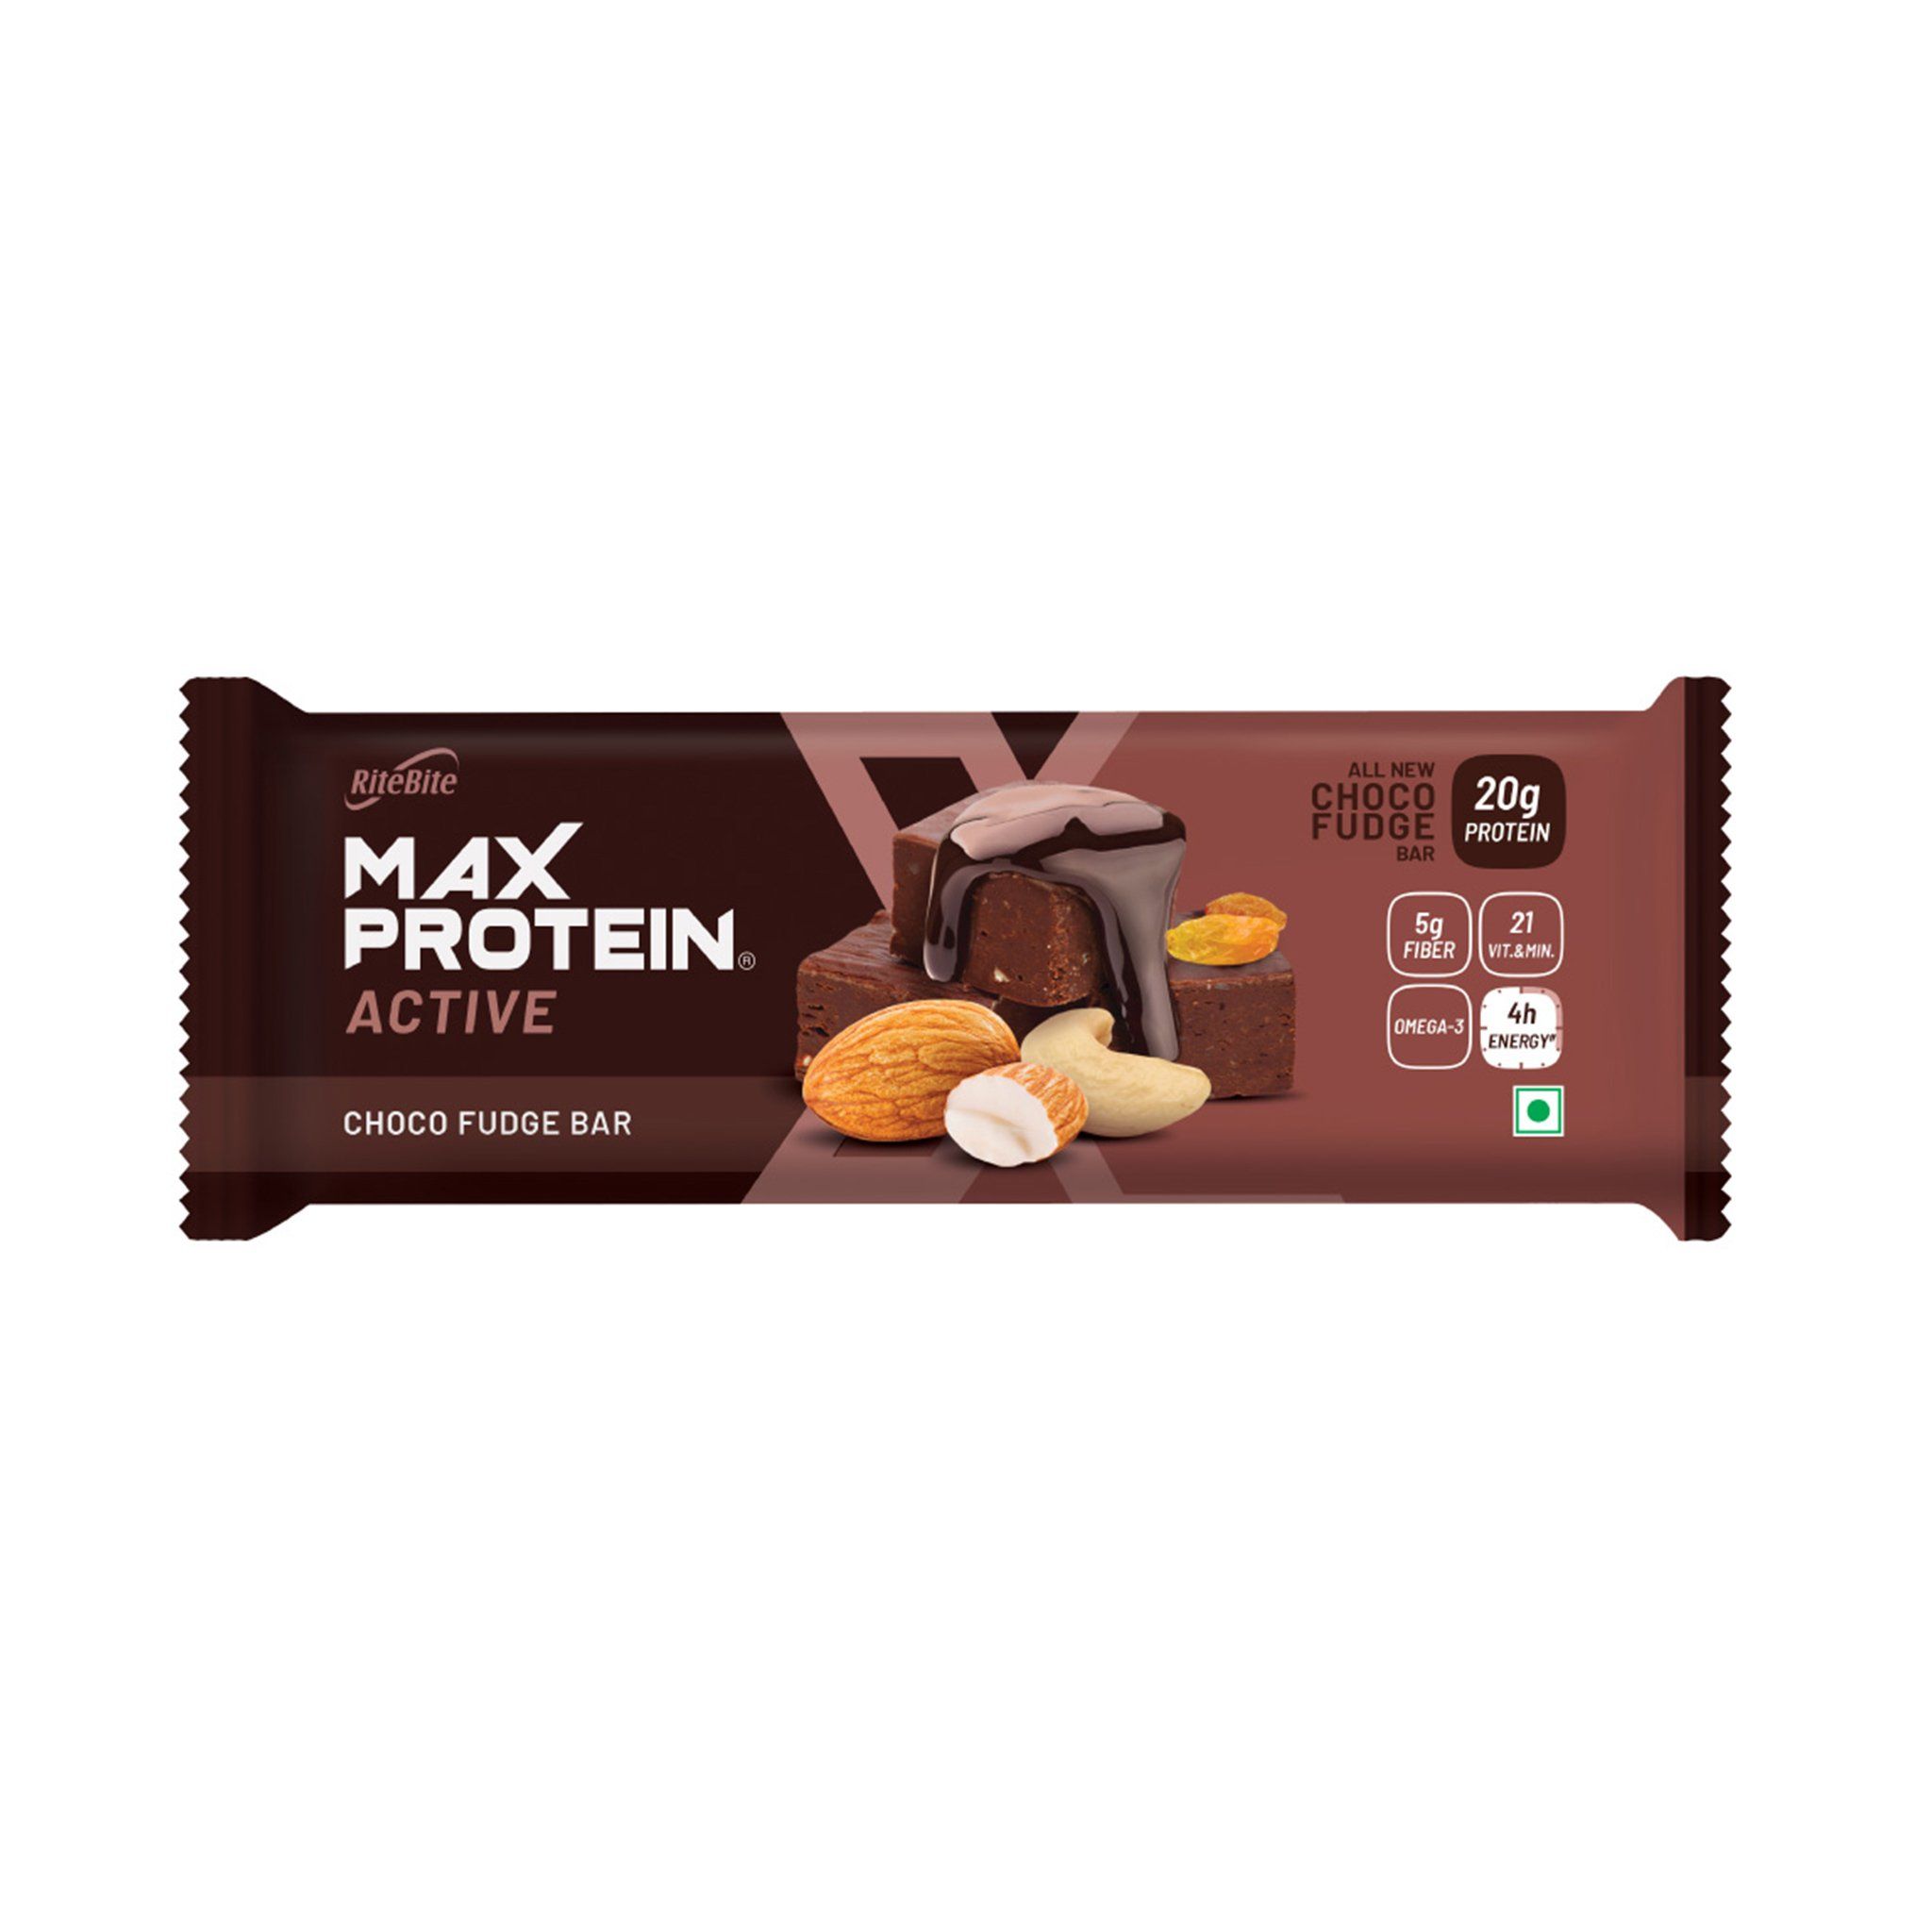 RiteBite Max Protein Active Choco Fudge Bar, 75 gm, Pack of 1 